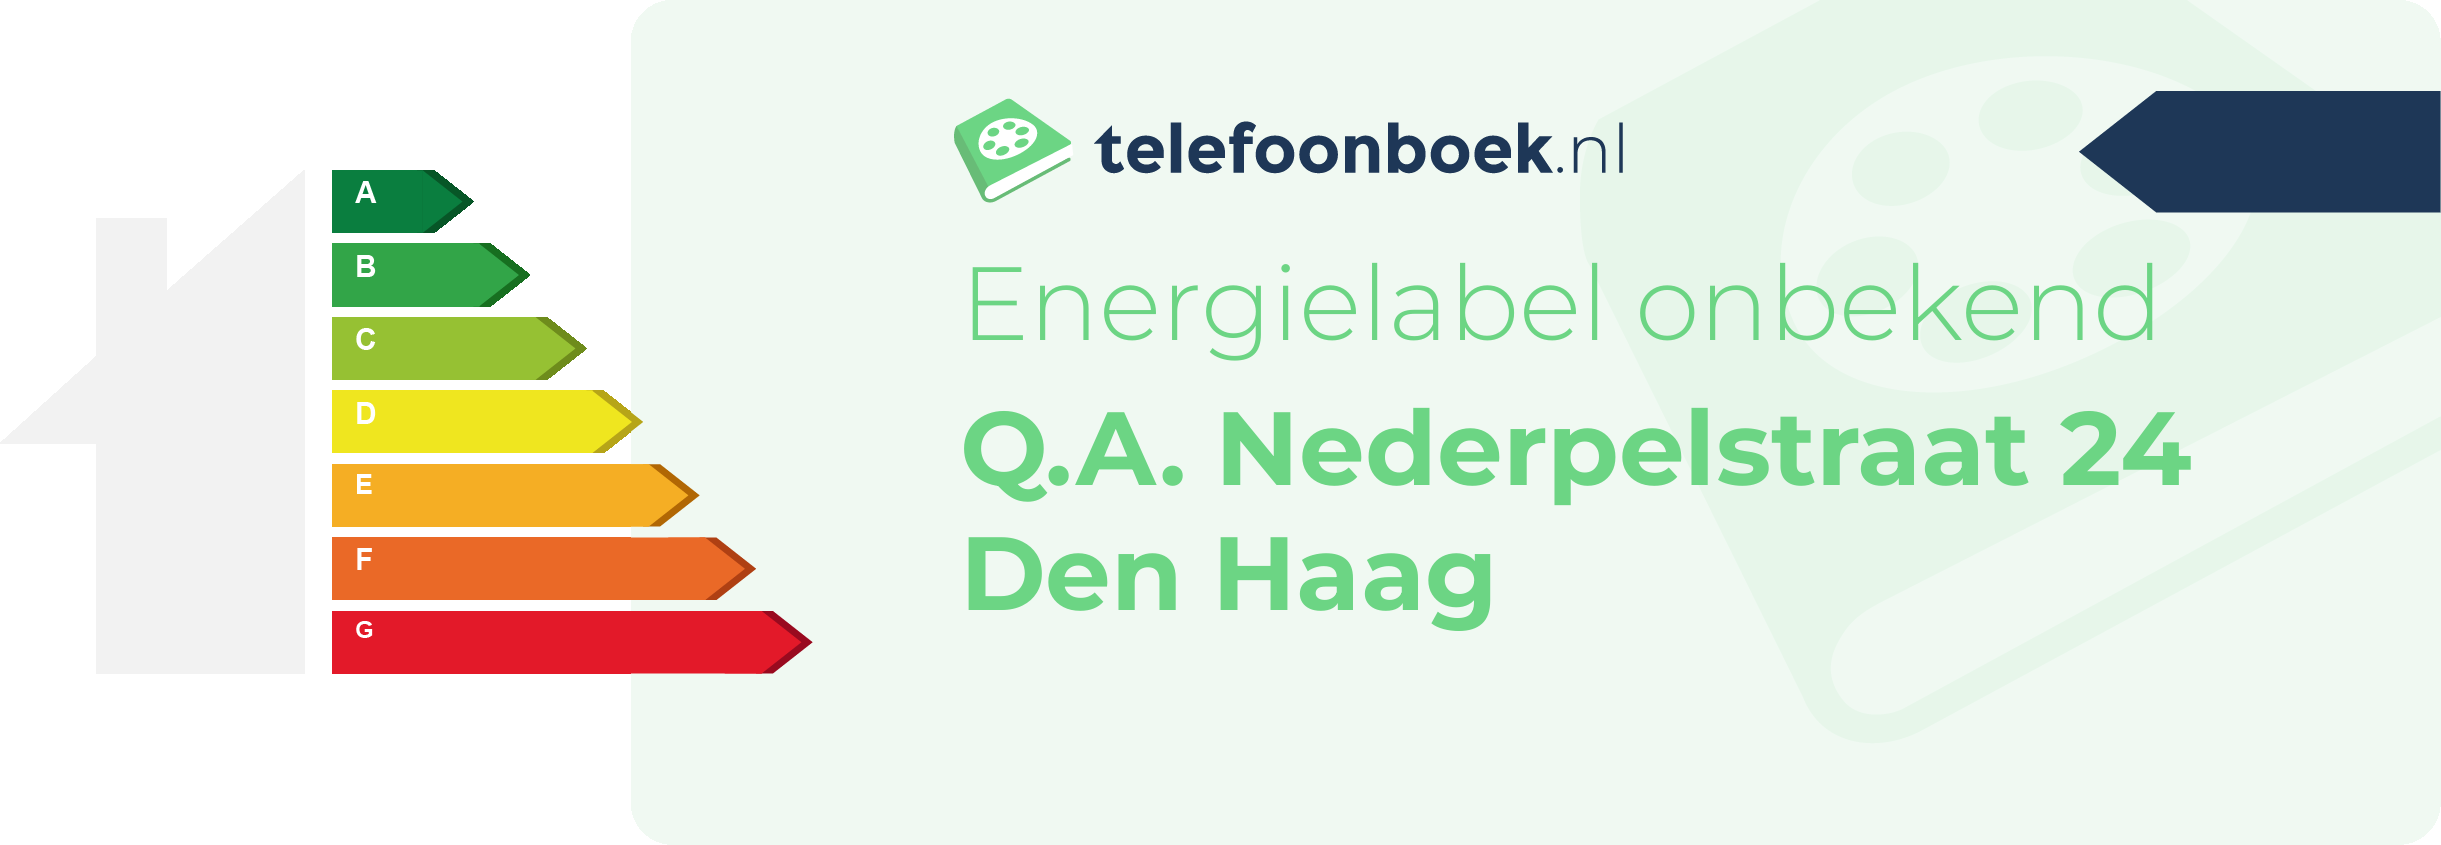 Energielabel Q.A. Nederpelstraat 24 Den Haag